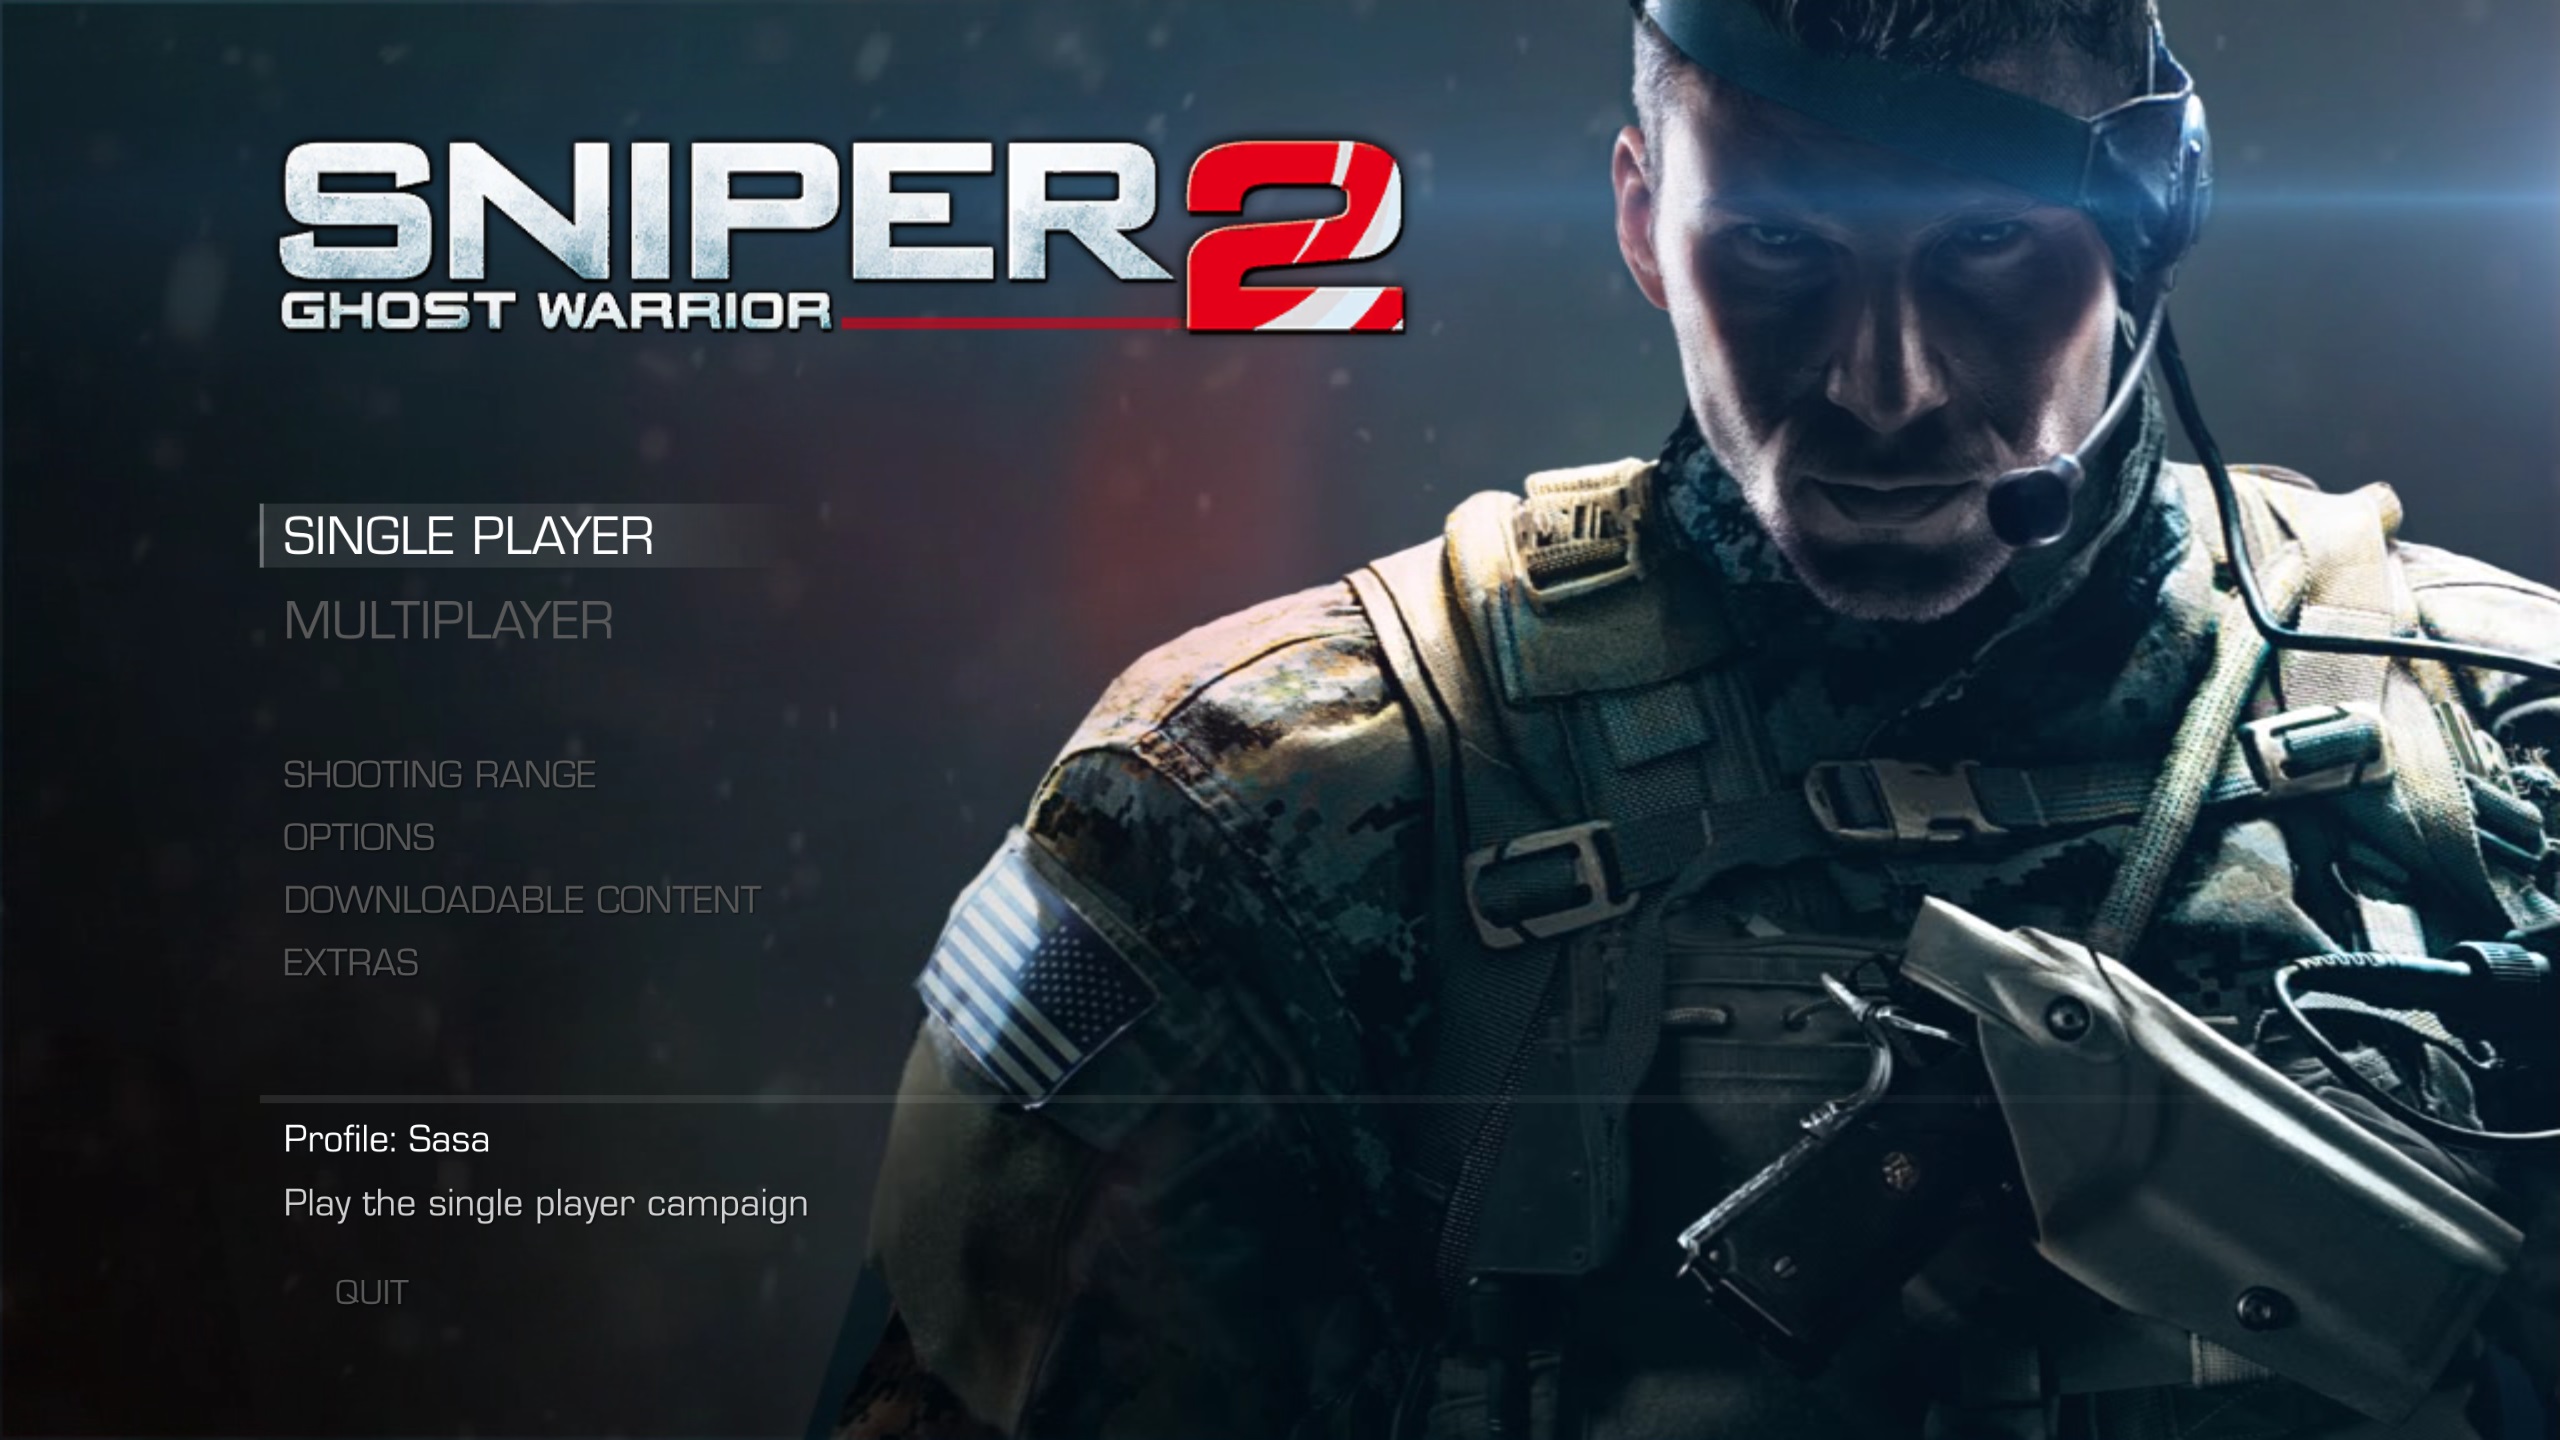 Sniper-Ghost-Warrior-2-Screenshot-Best-PC-Games-2013-SuperComTech.jpg